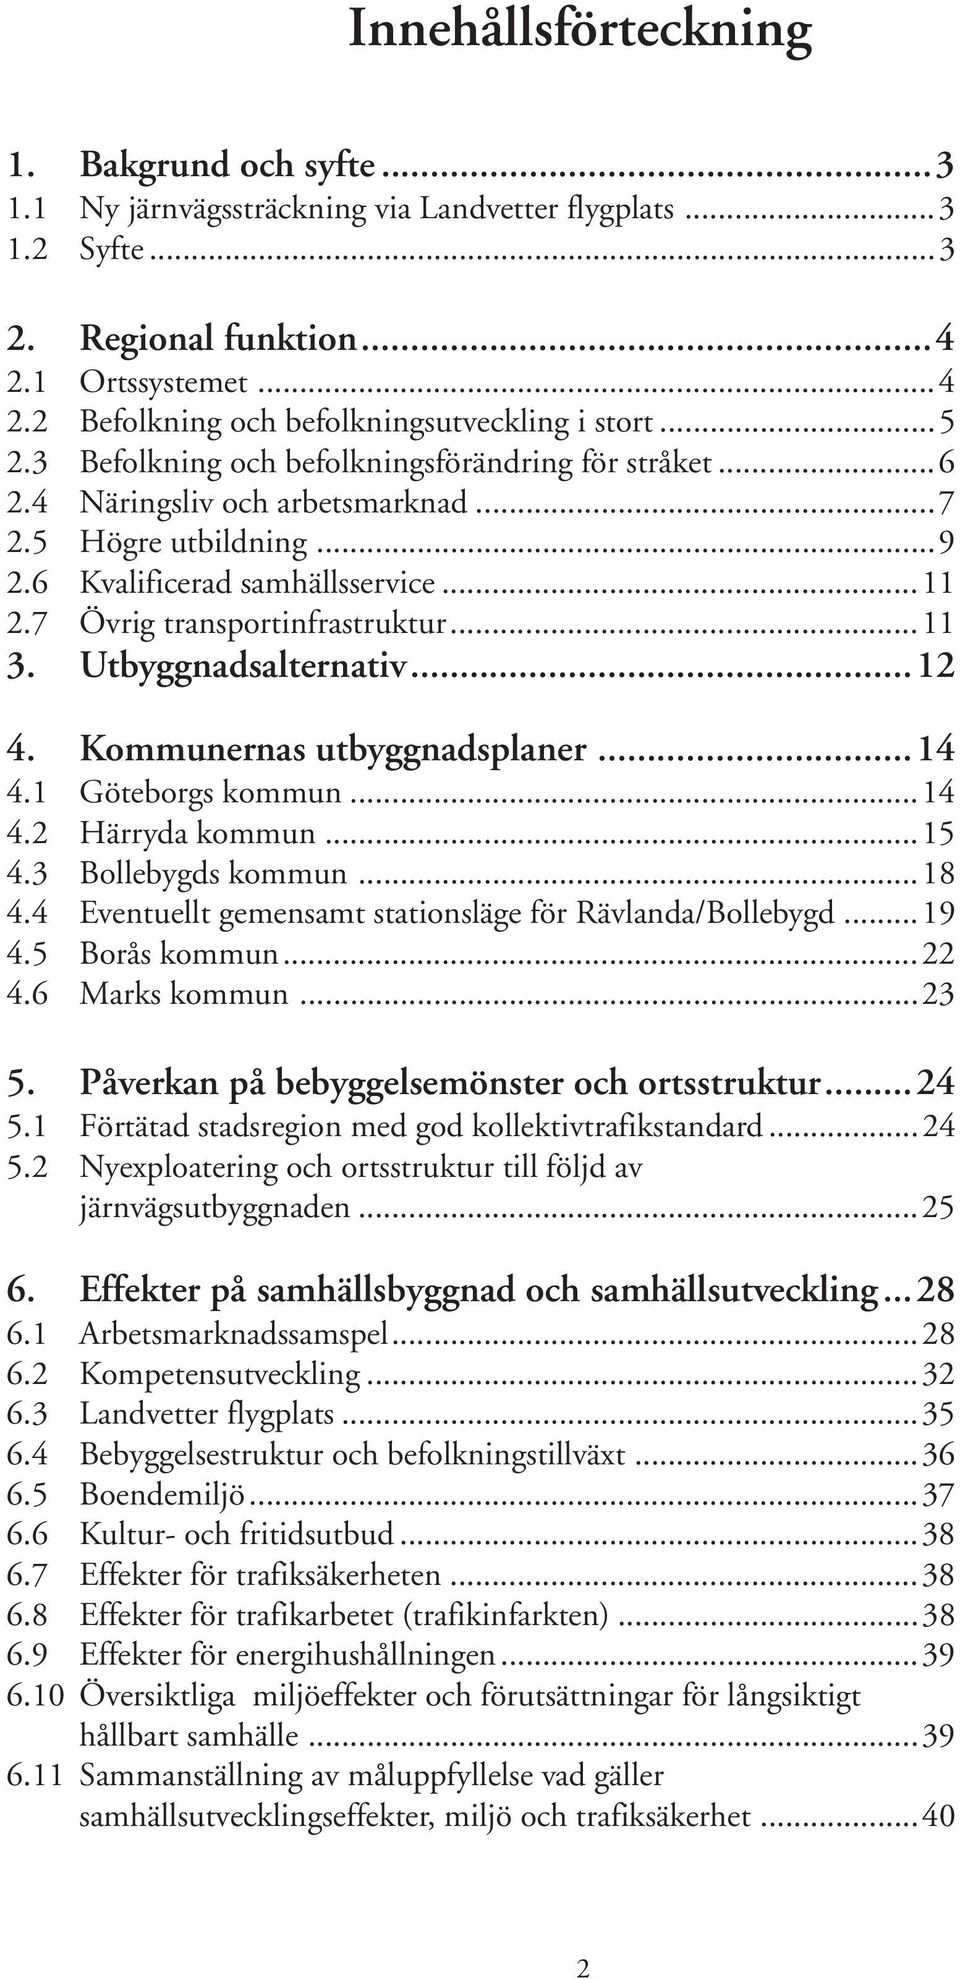 Utbyggnadsalternativ...12 4. Kommunernas utbyggnadsplaner...14 4.1 Göteborgs kommun...14 4.2 Härryda kommun...15 4.3 Bollebygds kommun...18 4.